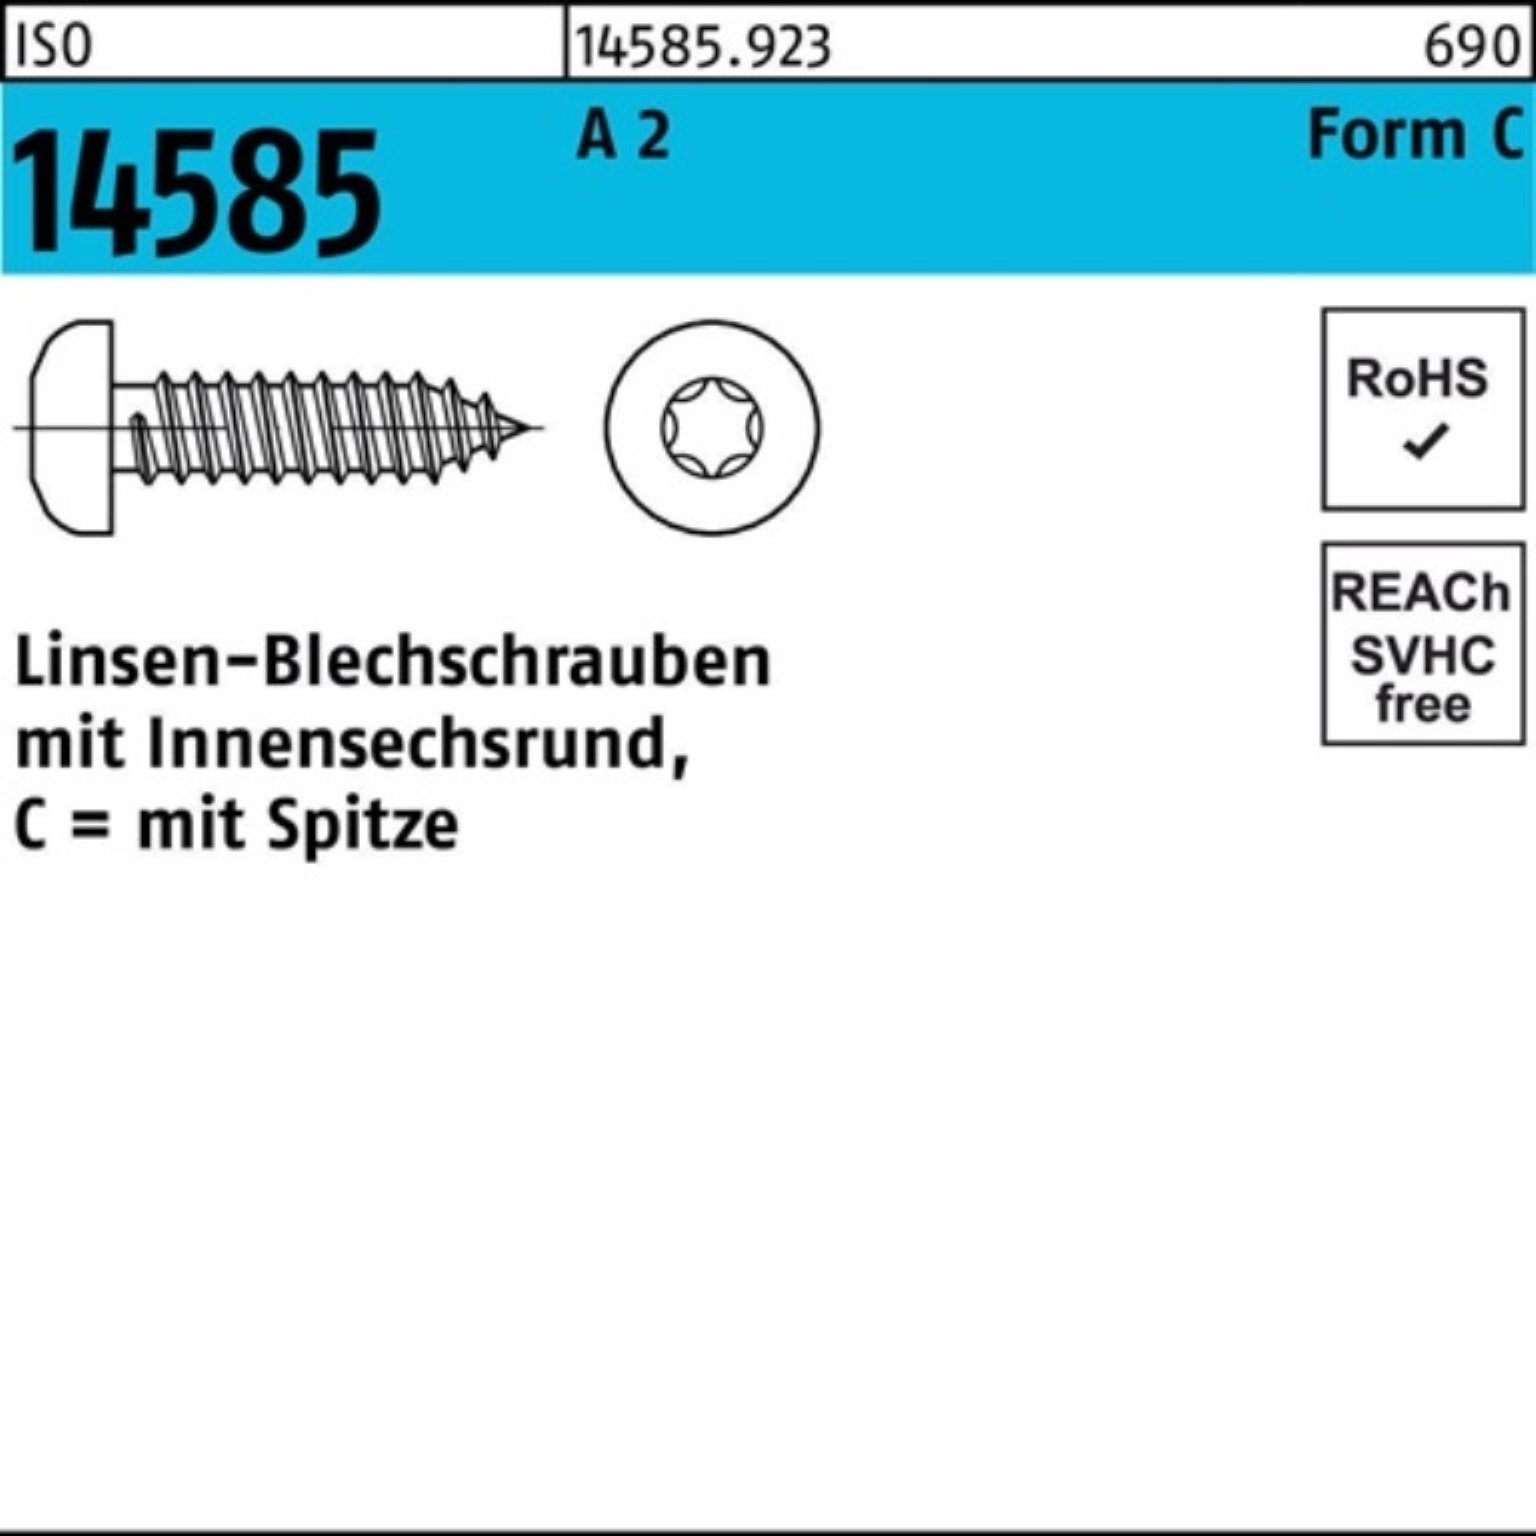 Pack 60 Blechschraube Reyher T30 14585 ISO 250 ISR 6,3x A St Linsenblechschraube 2 250er -C